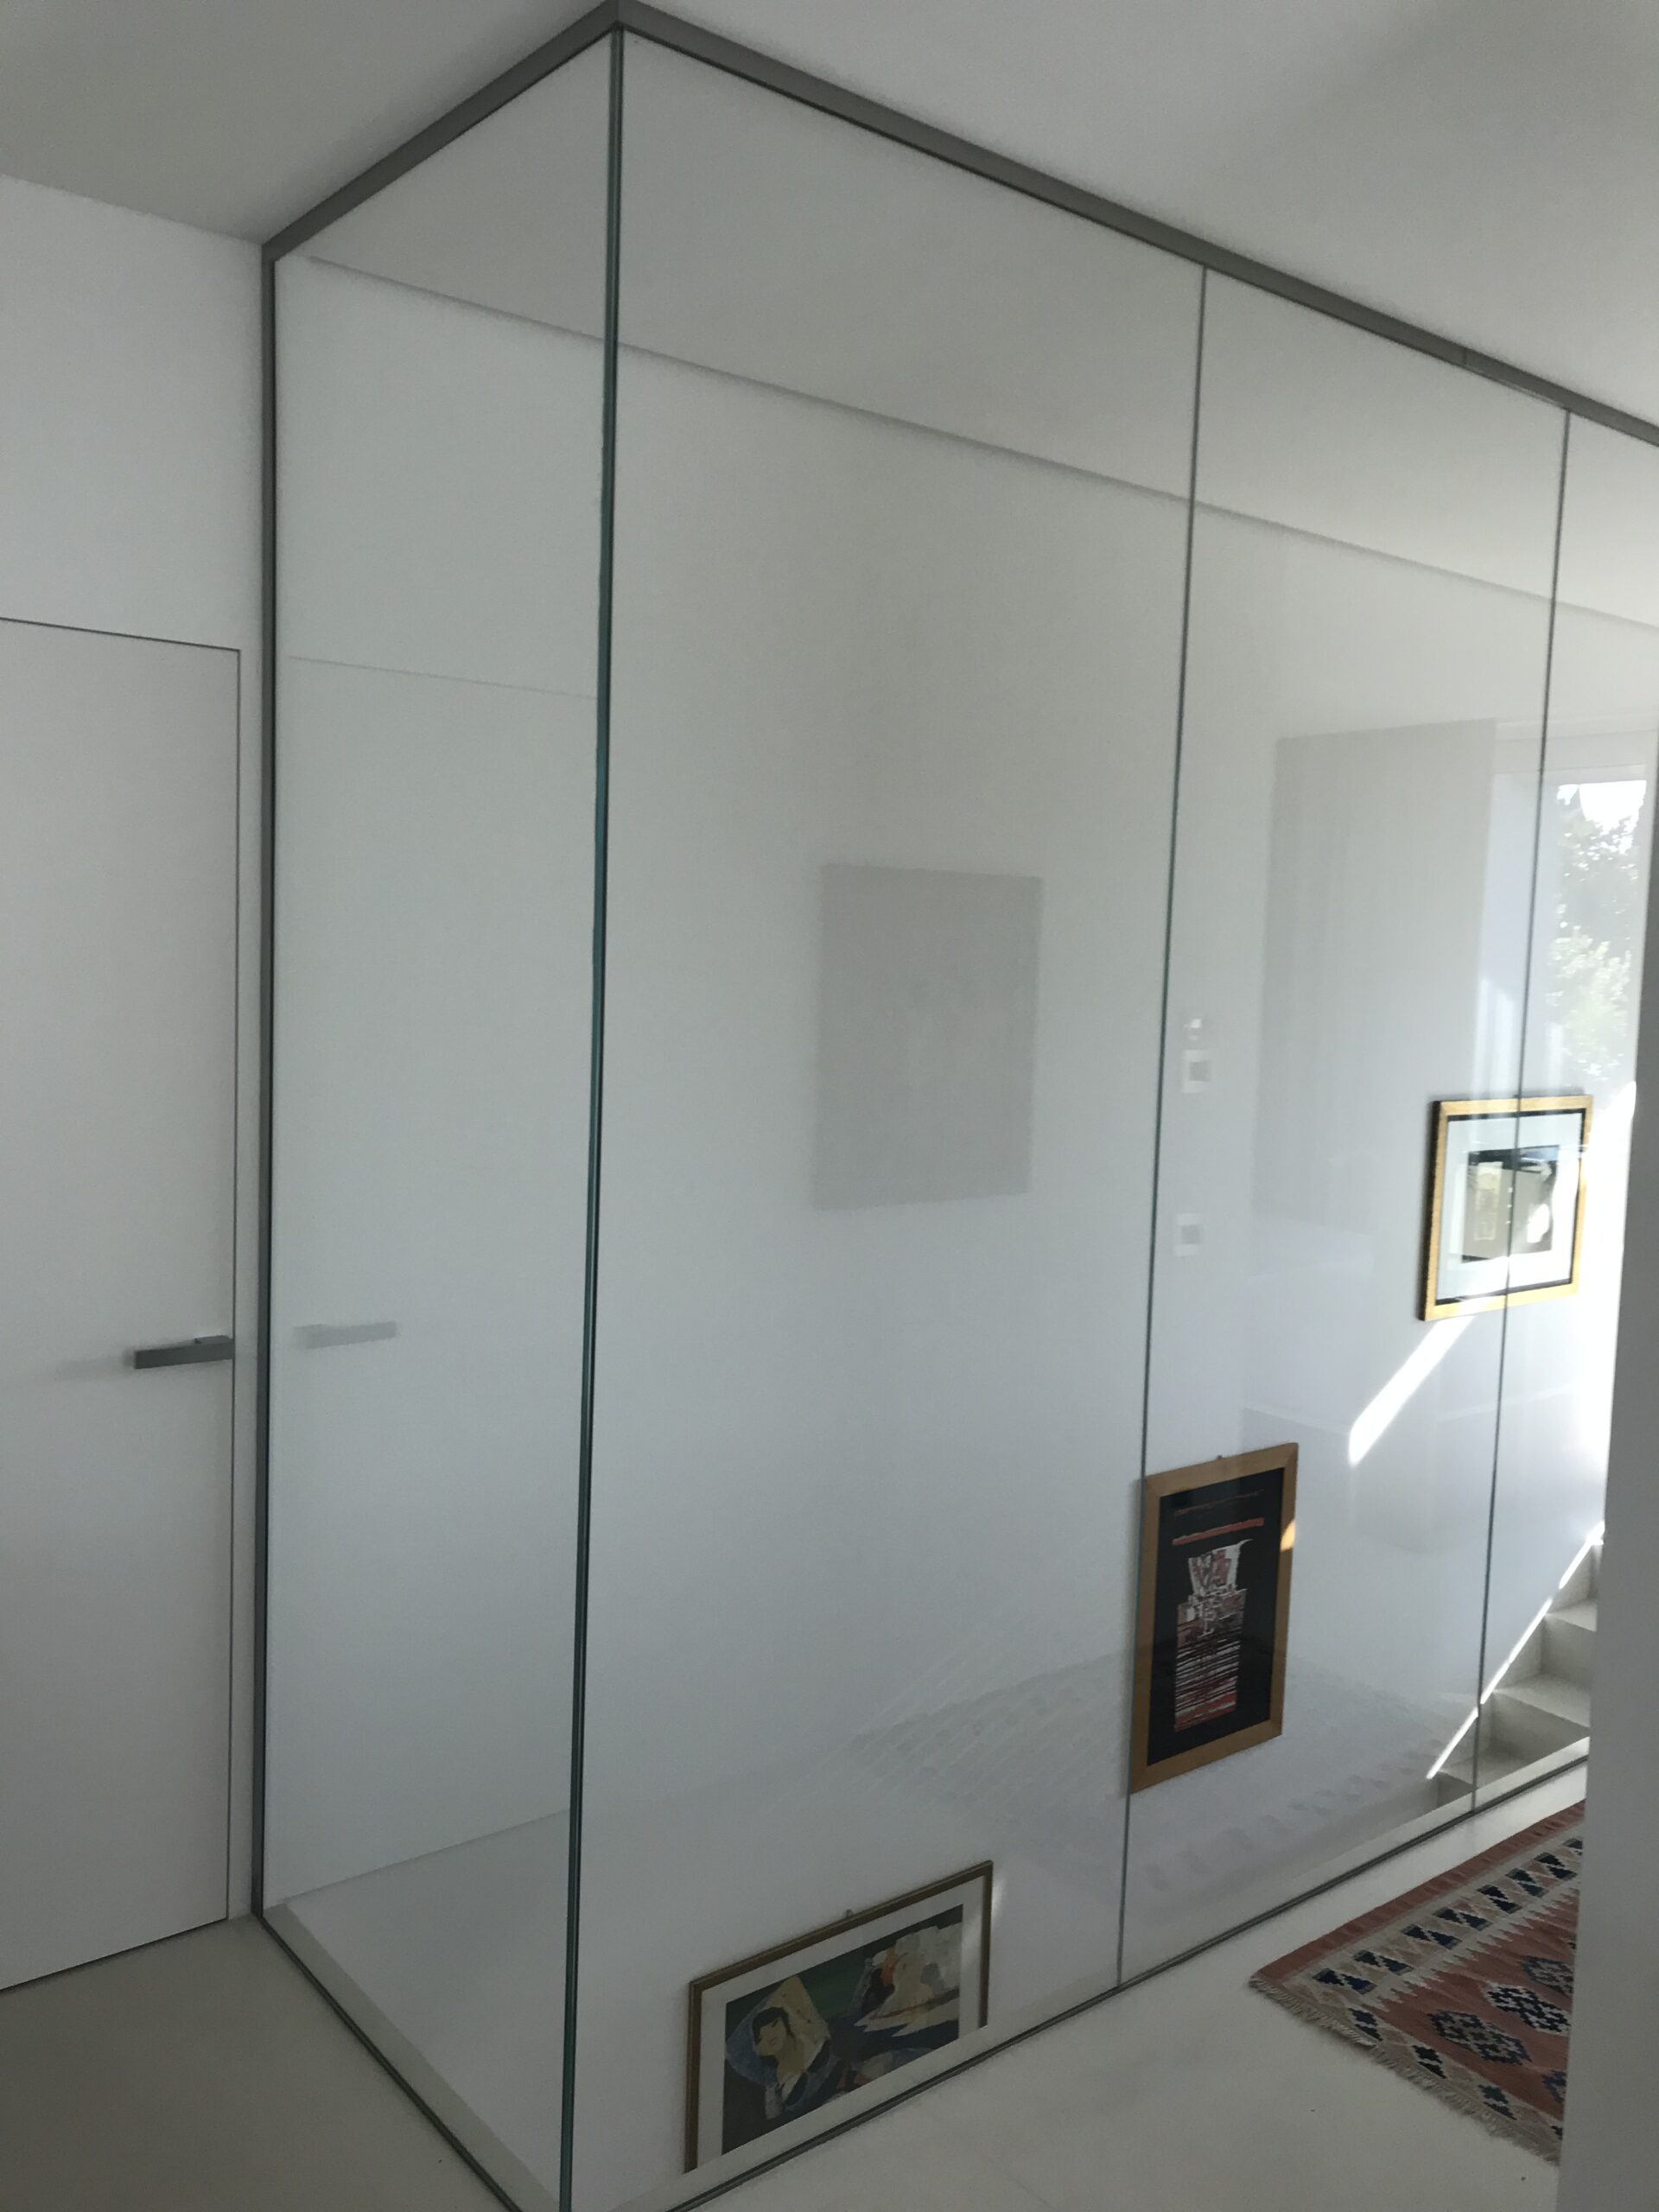 Parapetto in vetro trasparente per chiusura scala moderna a Treviso.